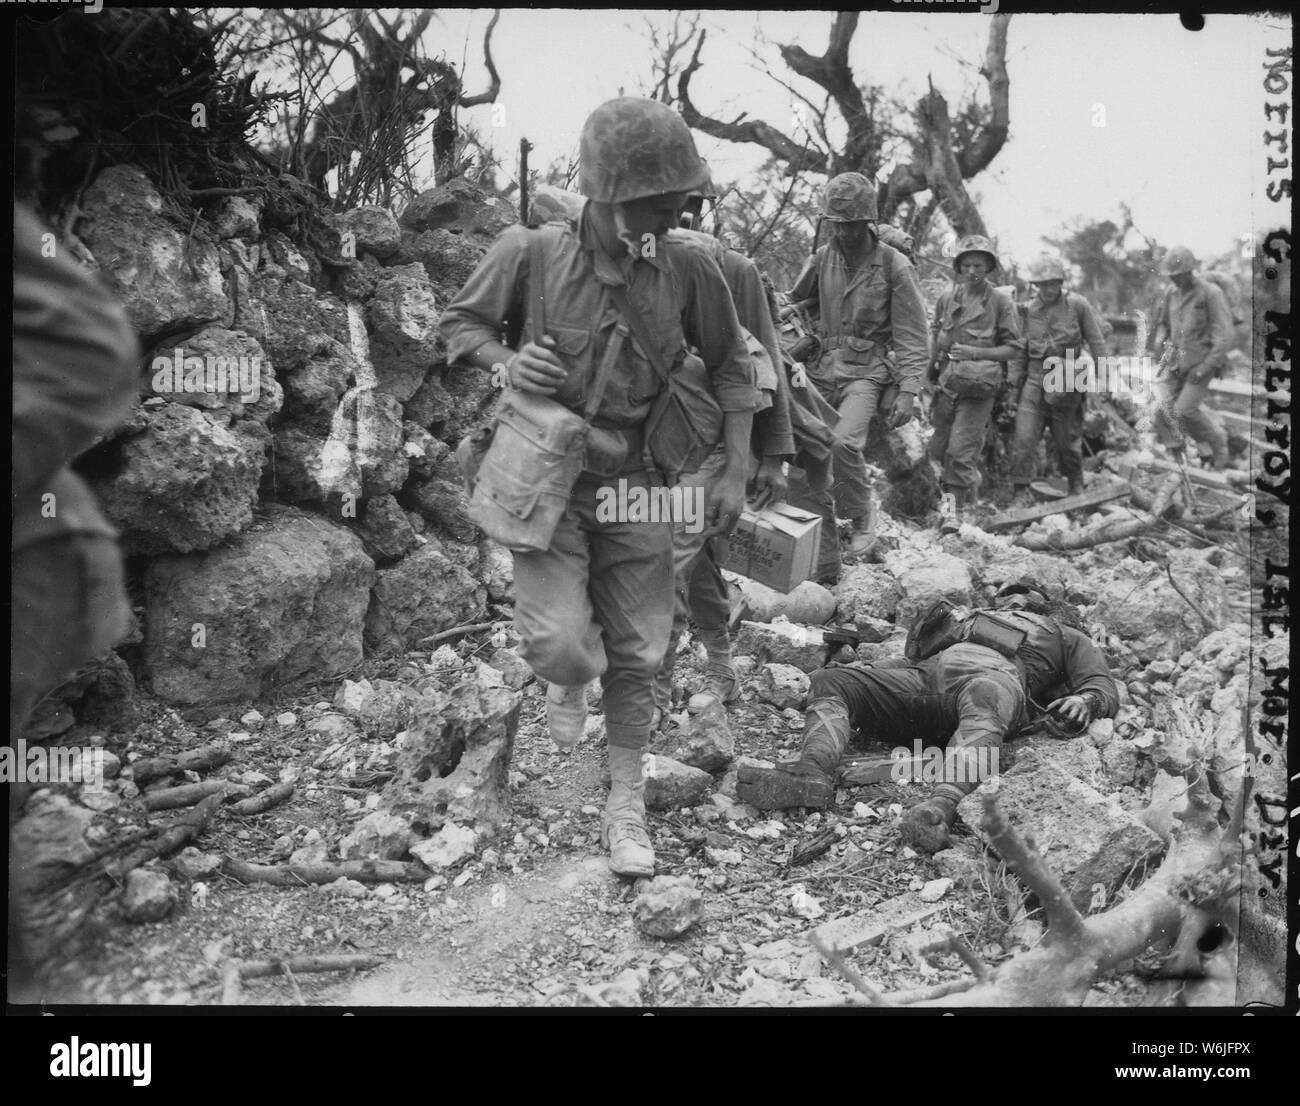 Marines passent par un petit village où les soldats japonais était mort. Okinawa, avril 1945. ; notes générales : utilisation de la guerre et des conflits Nombre 1231 lors de la commande d'une reproduction ou demande d'informations sur cette image. Banque D'Images